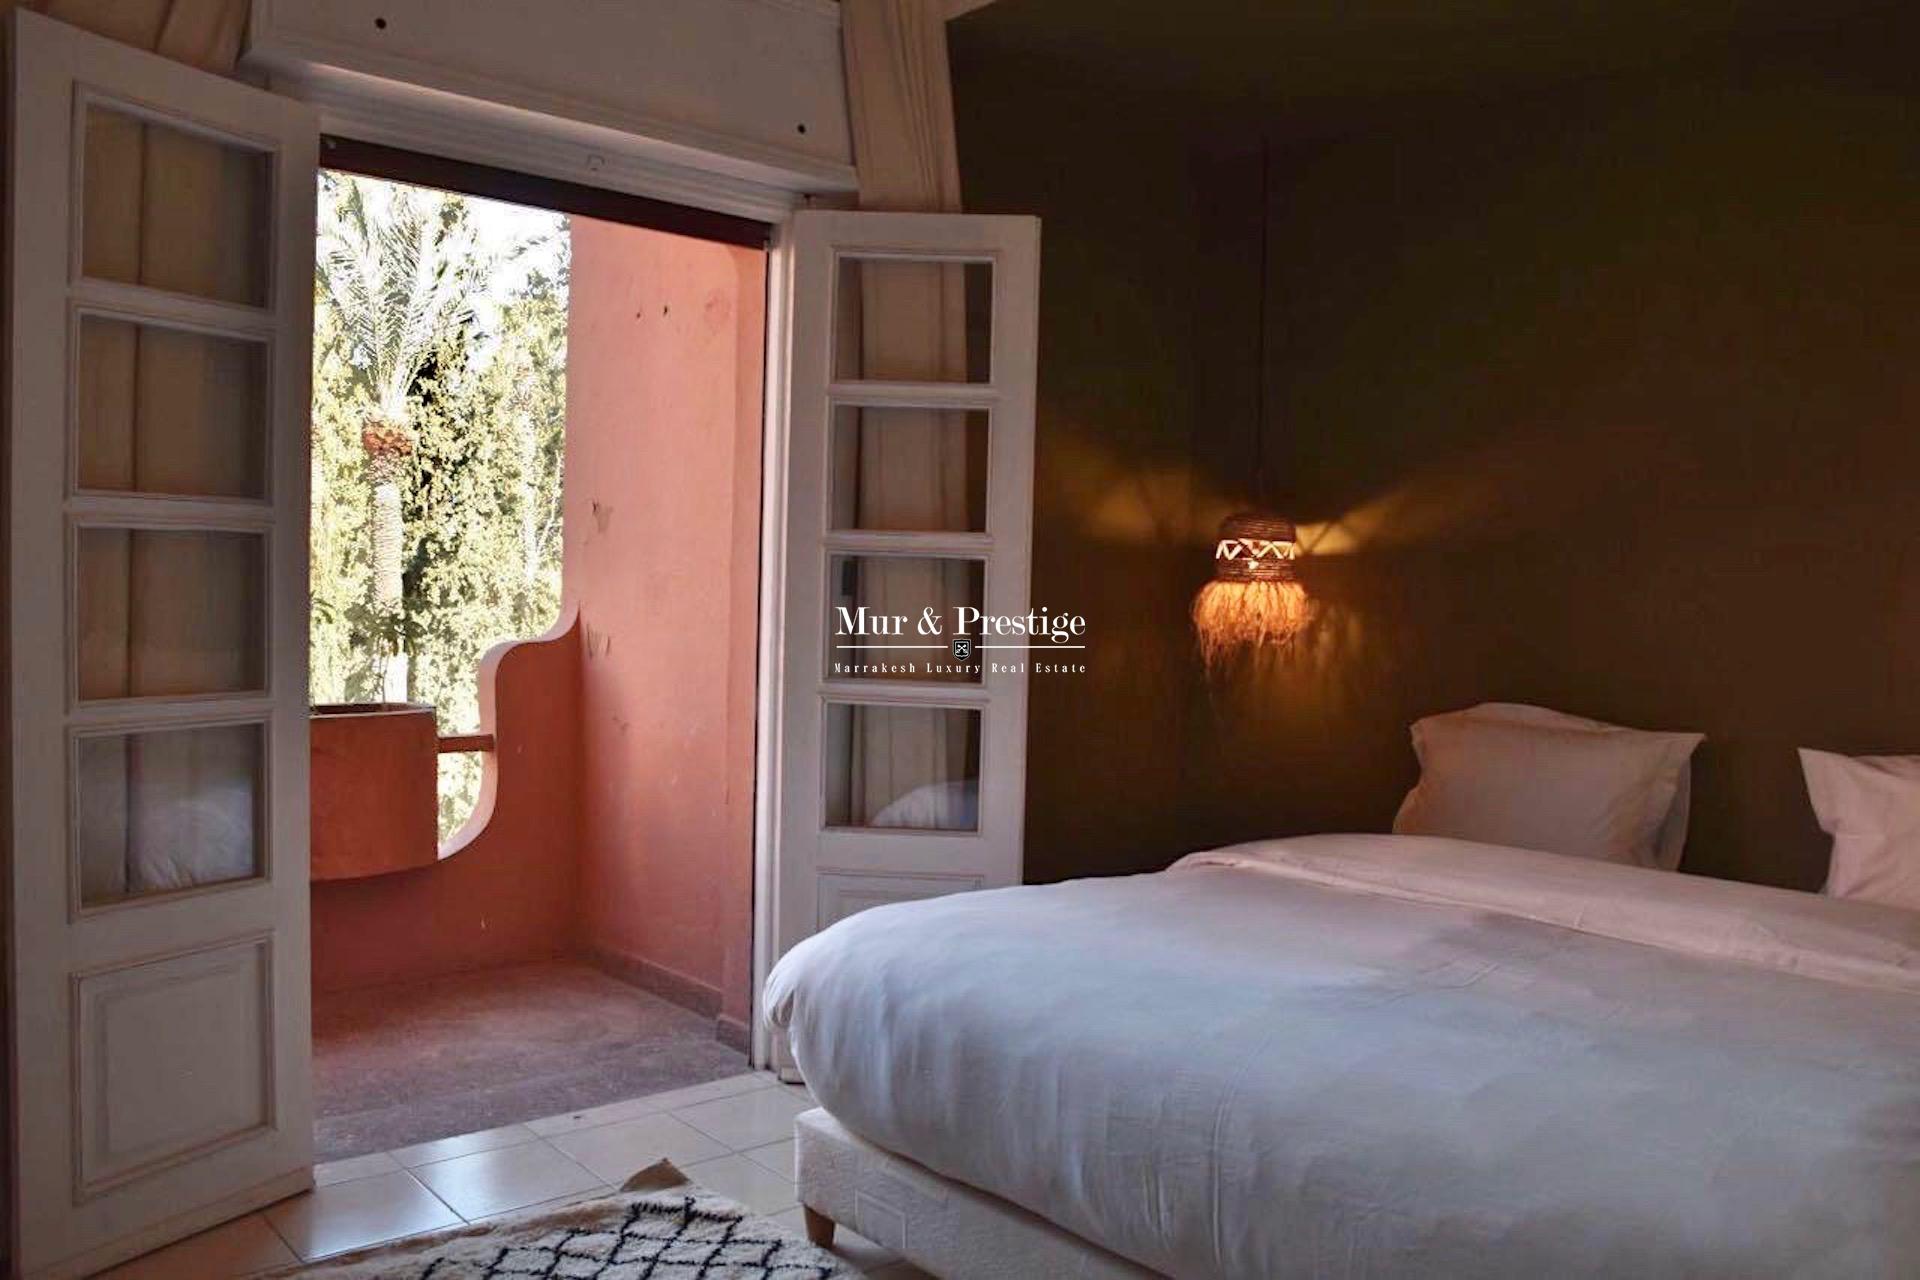 Jardin Majorelle - Appartement à vendre - Agence Immobilière Marrakech - copie